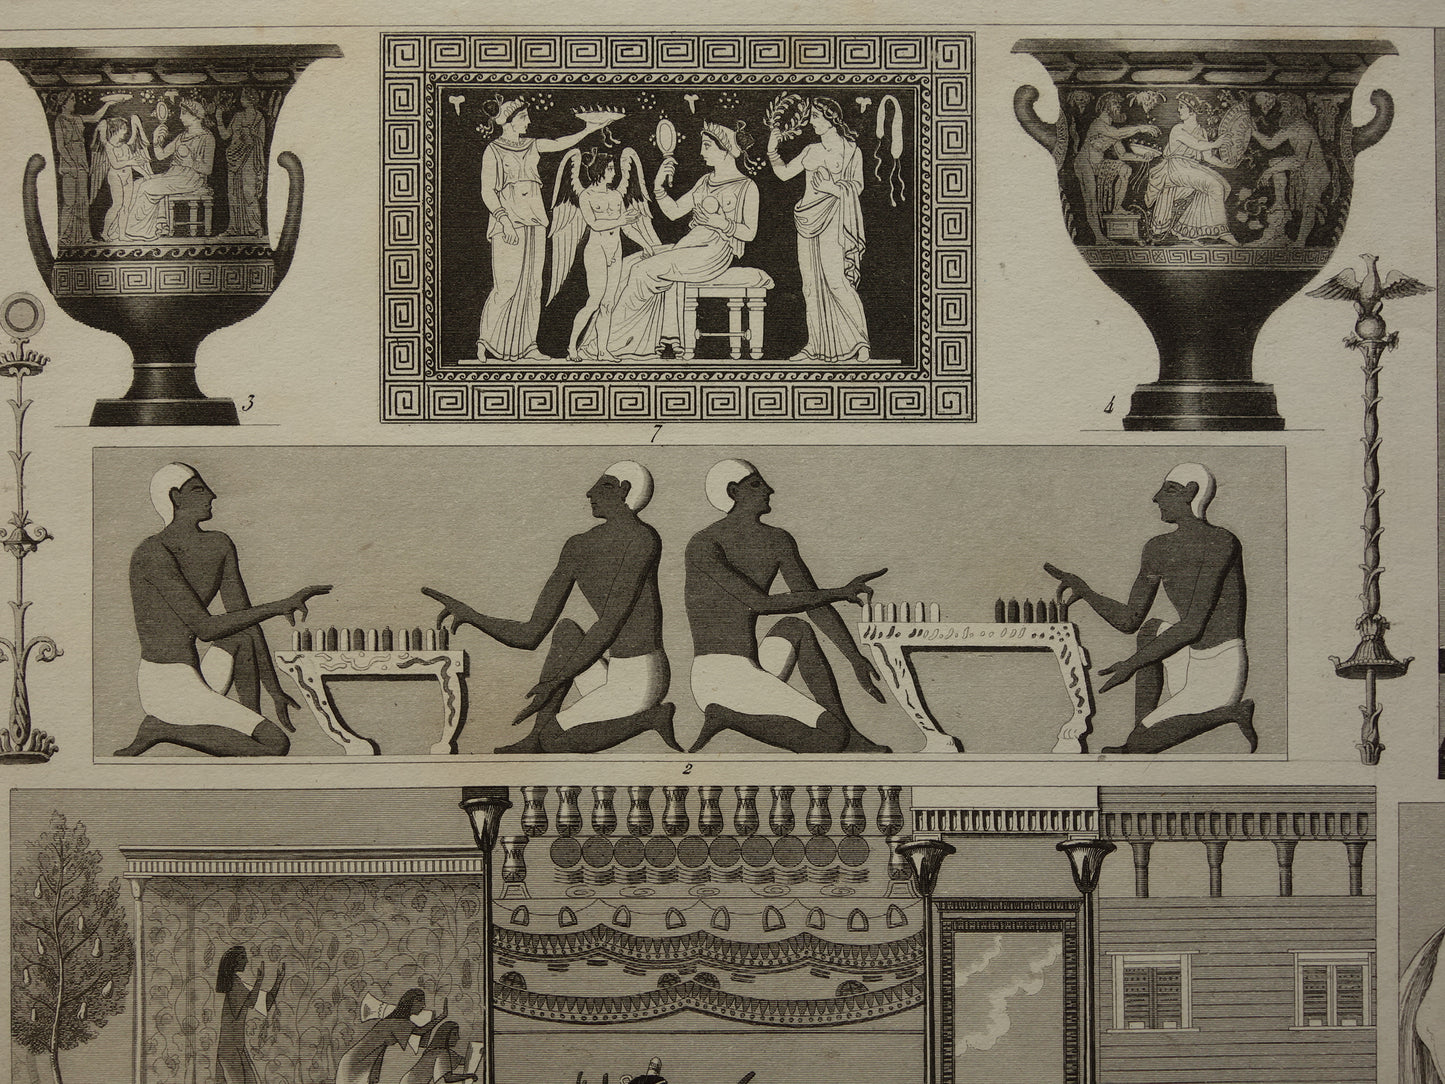 Oude Egyptische Griekse en Romeinse illustraties 160+ jaar oude prent kunstgeschiedenis schilderkunst in klassieke oudheid